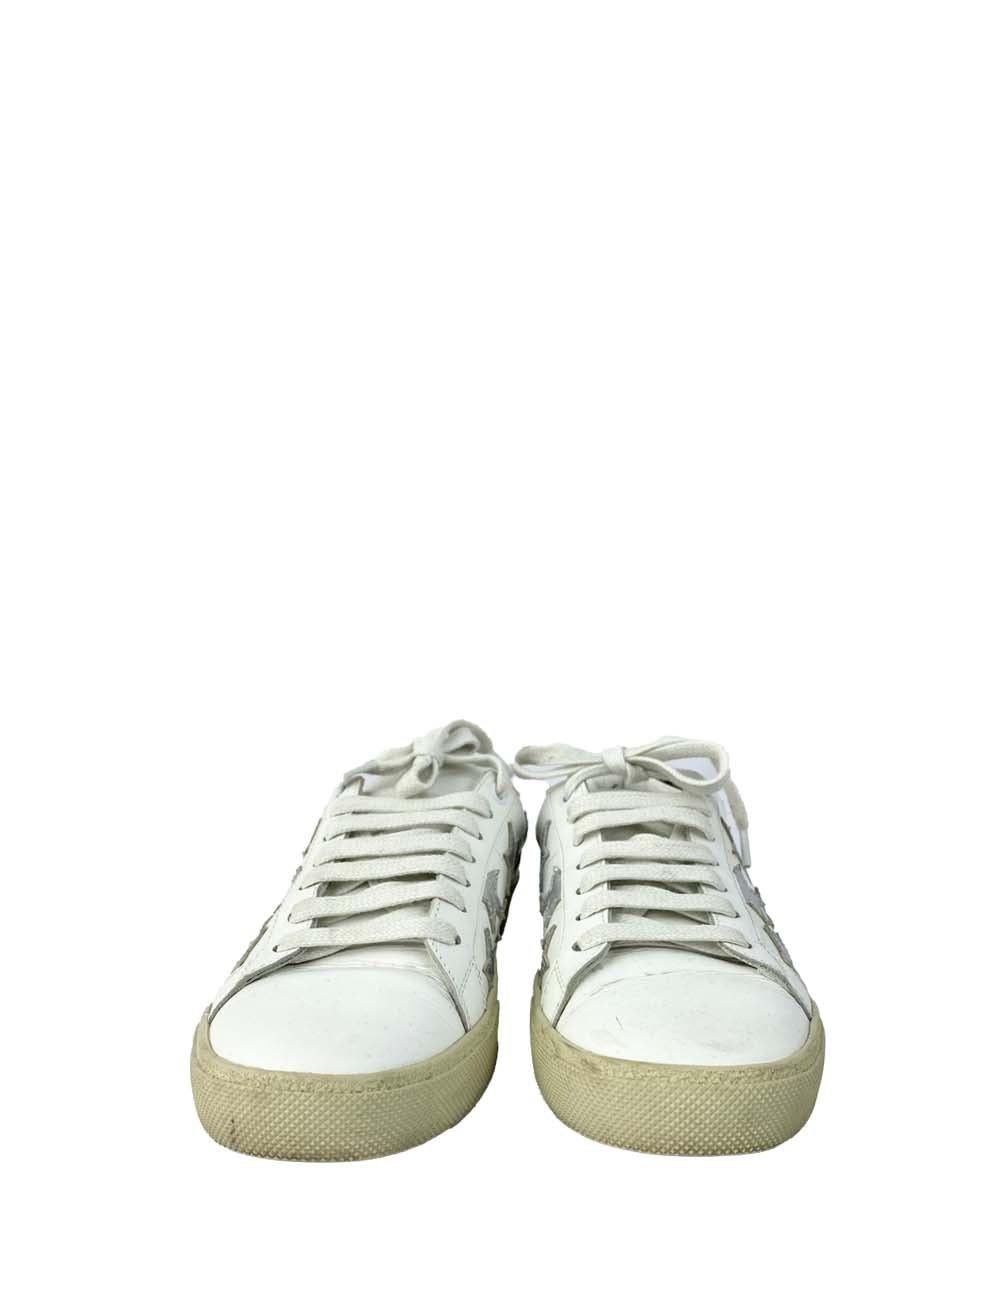 Weiße Saint Laurent Sneakers mit weißen Schnürsenkeln, schwarzem Detail auf der Rückseite und silbernem Sternendetail an den Seiten sowie einem leichten Plateau. Leichte Abnutzungserscheinungen an der Außenseite, sonst guter Zustand.

Zusätzliche